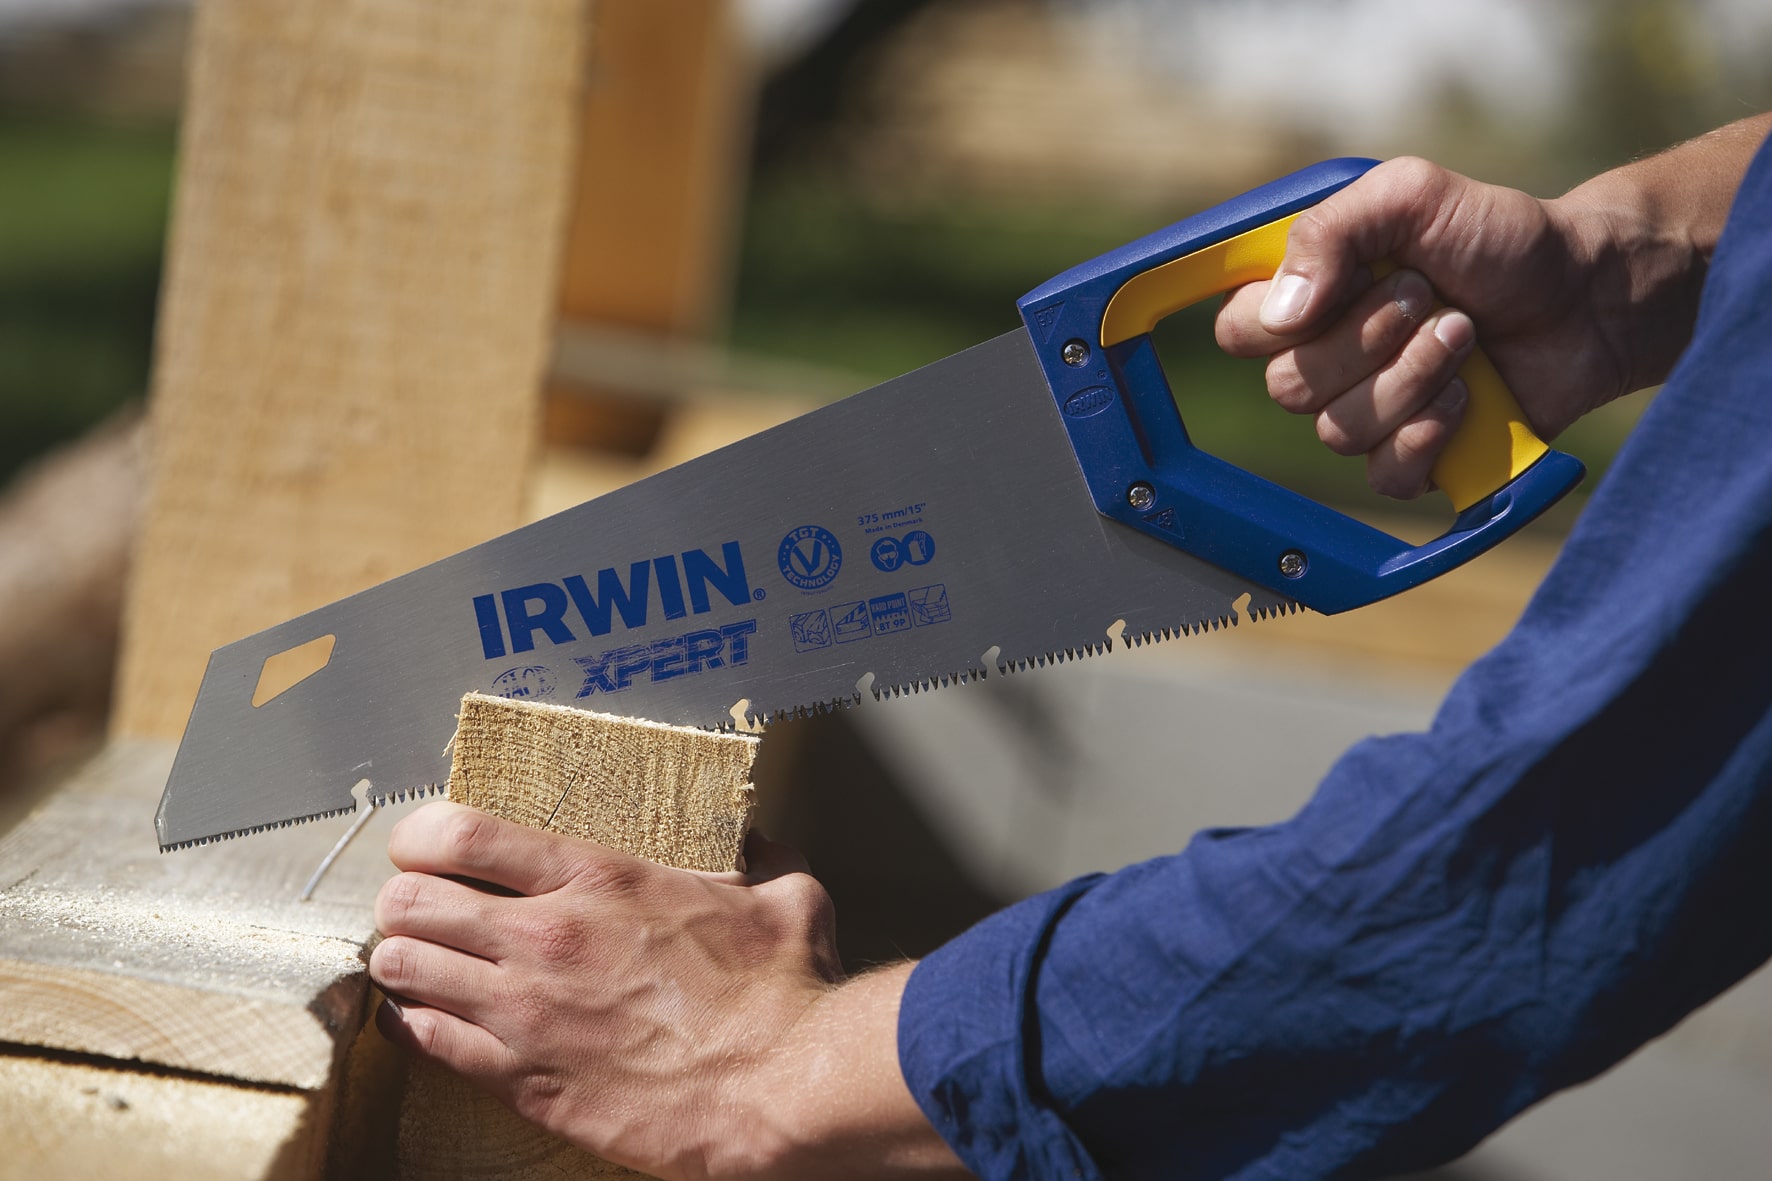 Ножівки IRWIN - висока якість та доступна ціна! - Инсел